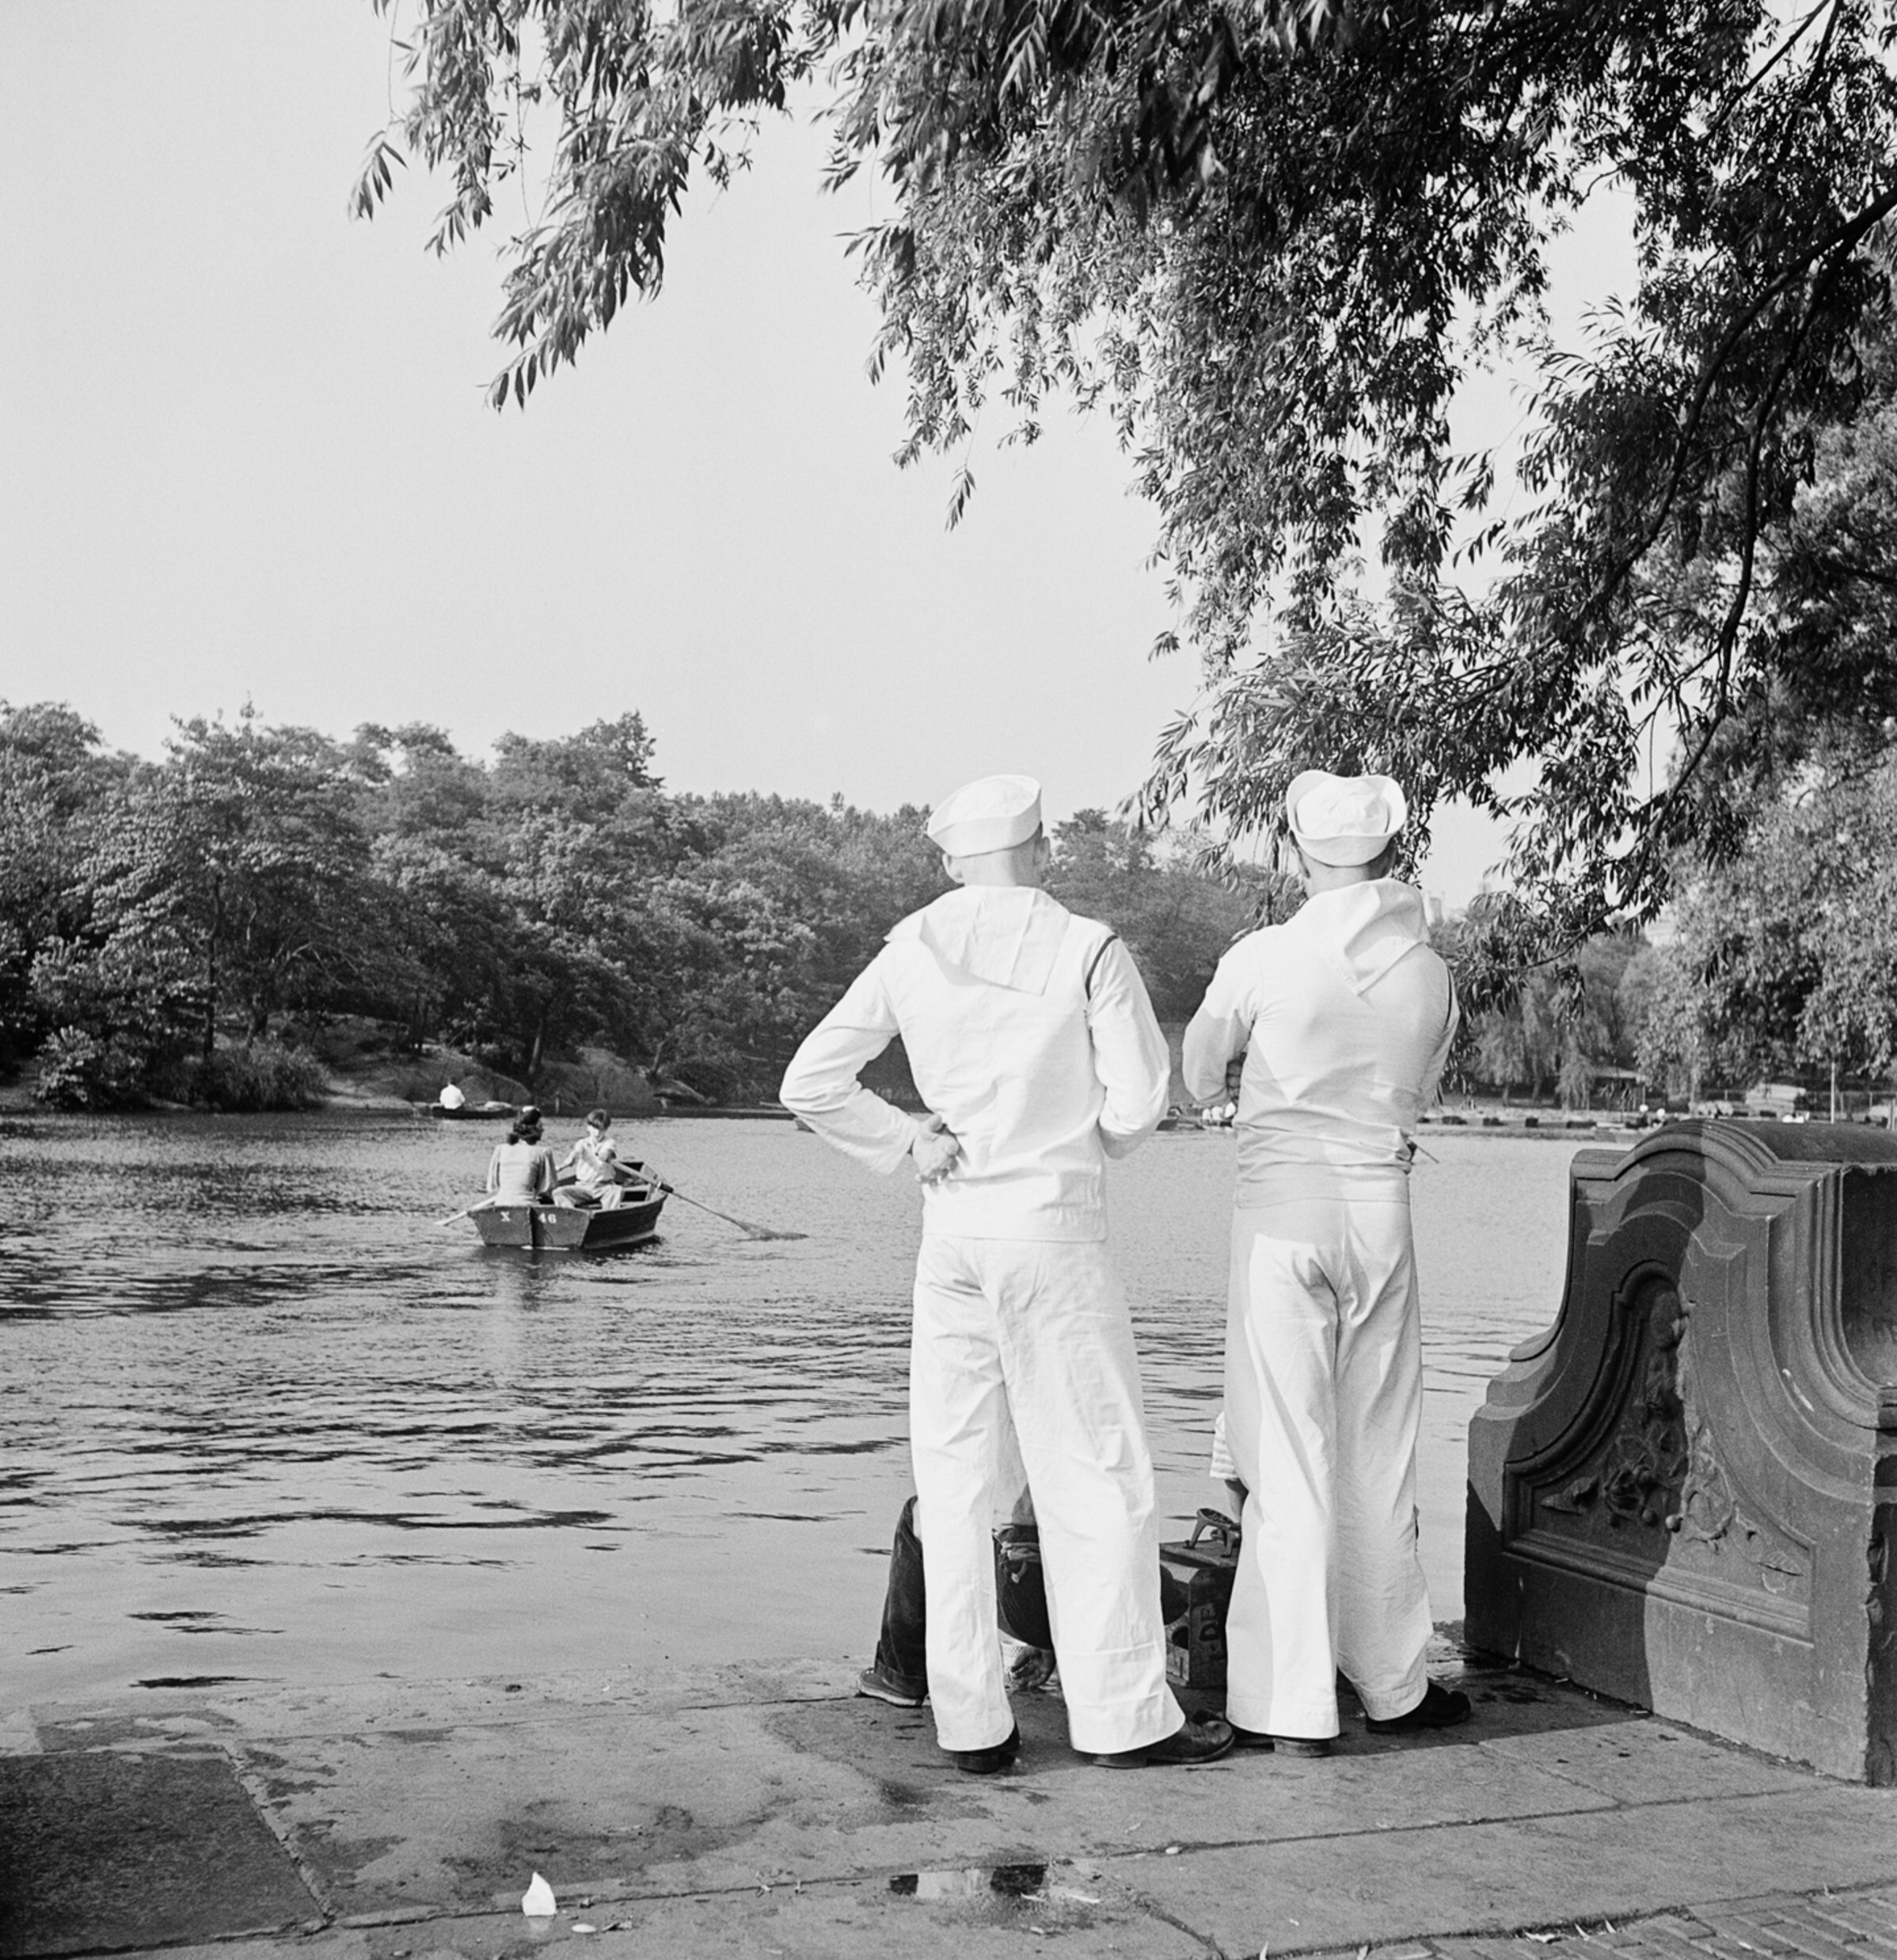 Моряки наблюдают за гребными лодками в Центральном парке, Нью-Йорк, 1942-44 гг. Фотограф Роман Вишняк